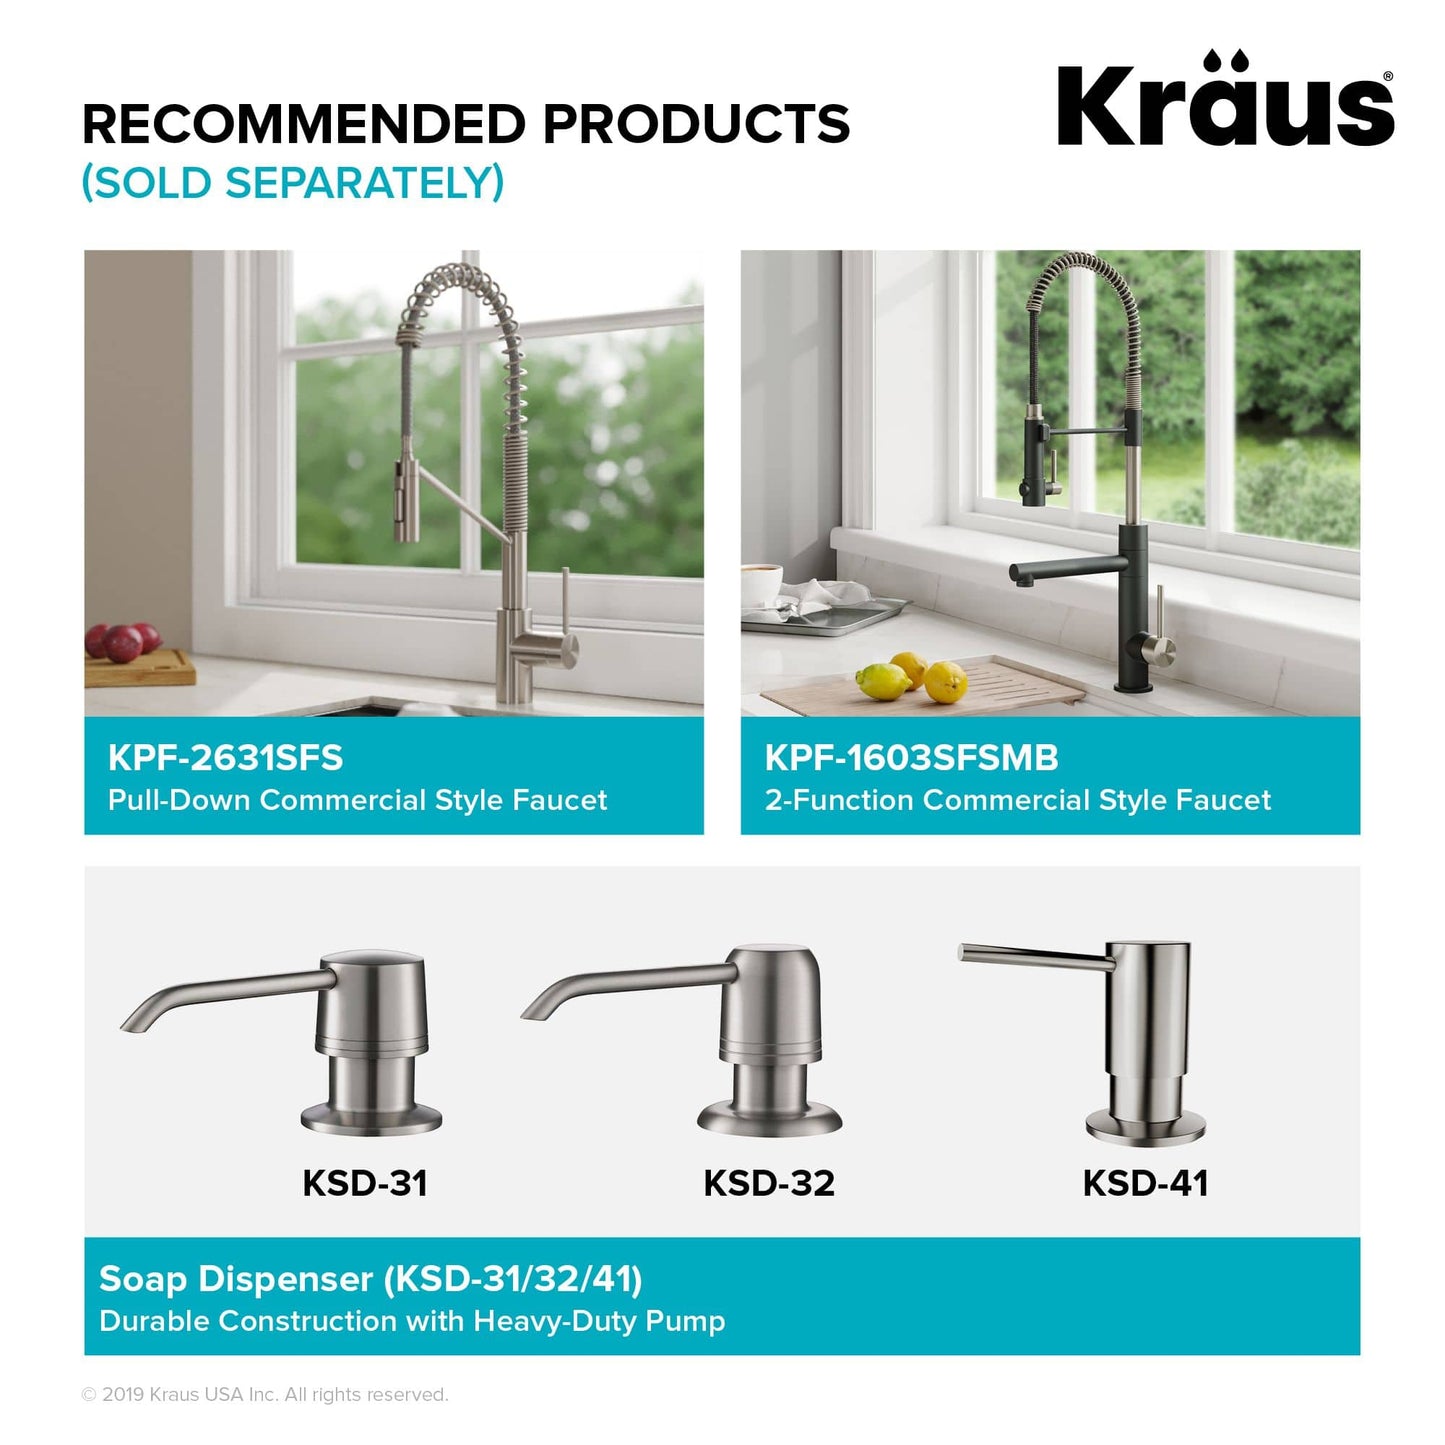 Kraus Kore Workstation 33" x 19" Undermount 16 Gauge Stainless Steel 50/50 Double Bowl Kitchen Sink